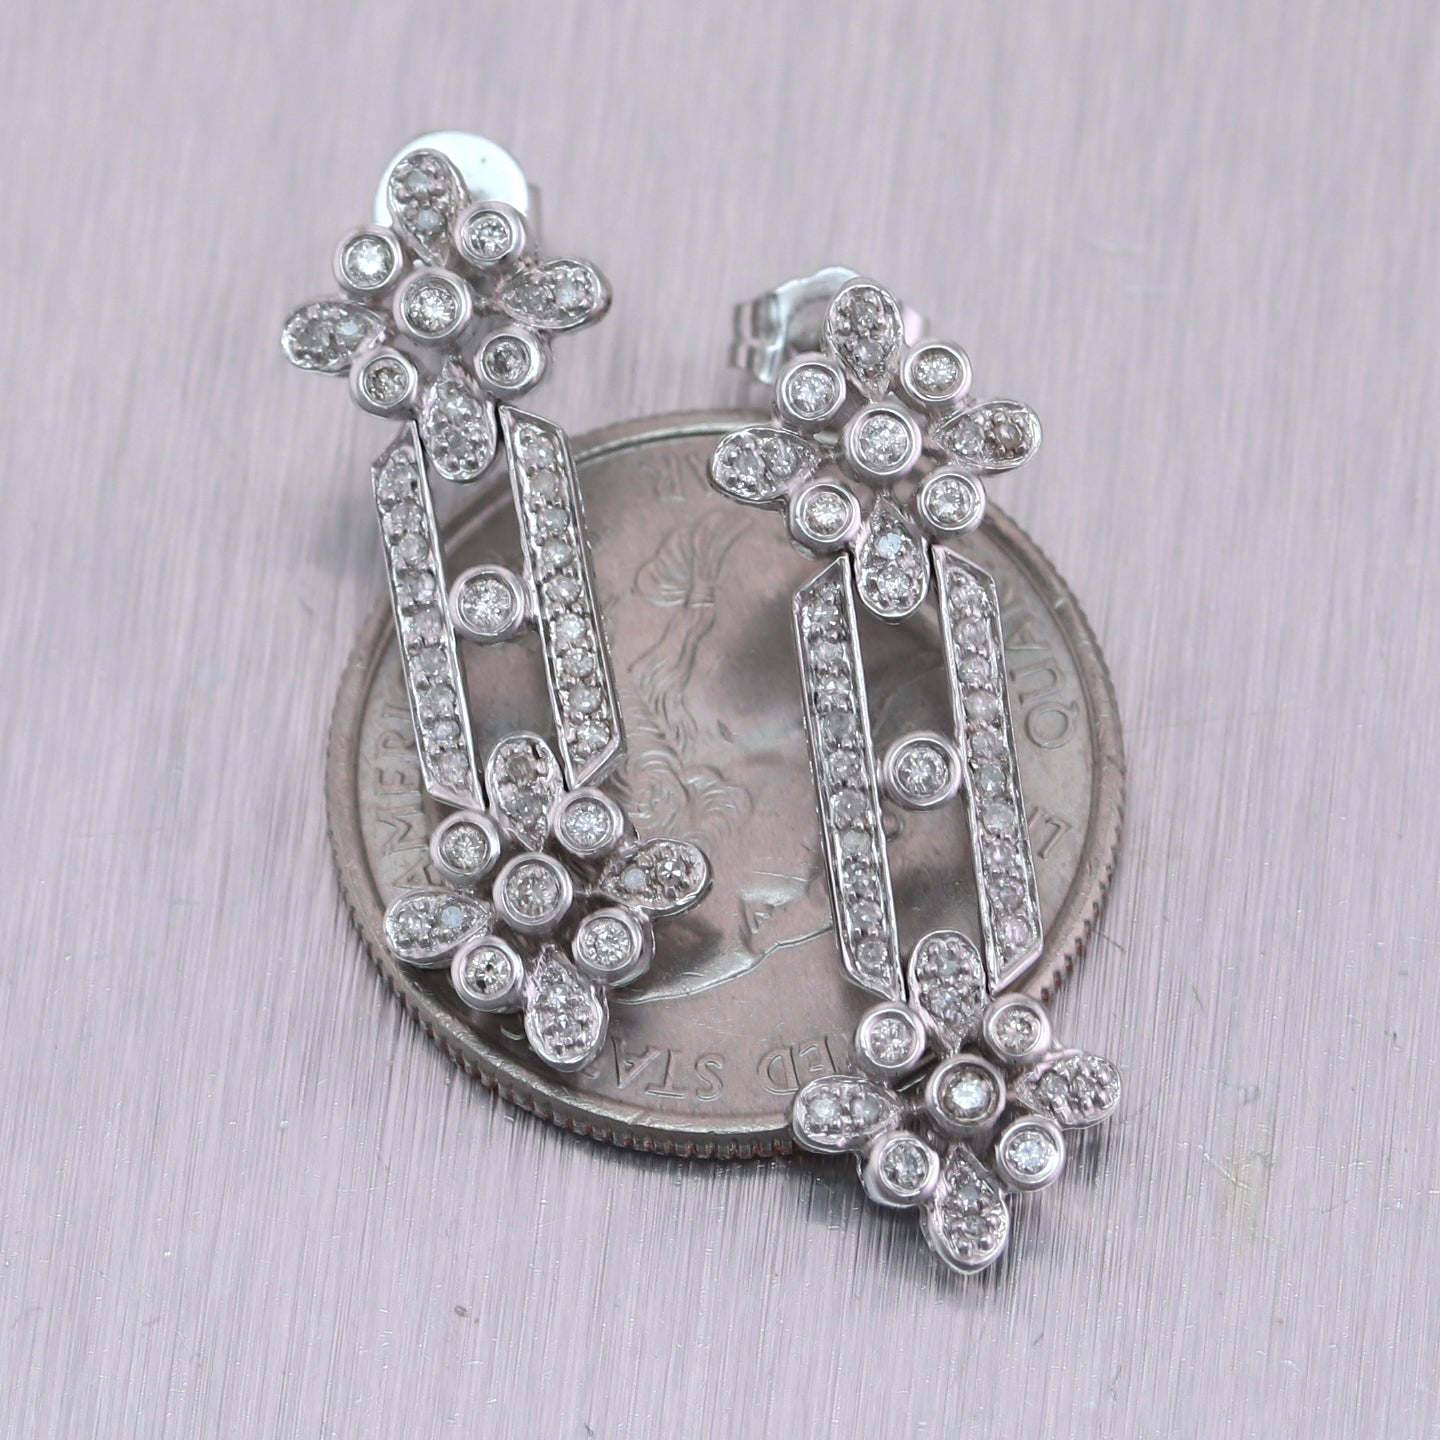 Vintage Estate 14k White Gold 1ctw Diamond Dangle Earrings